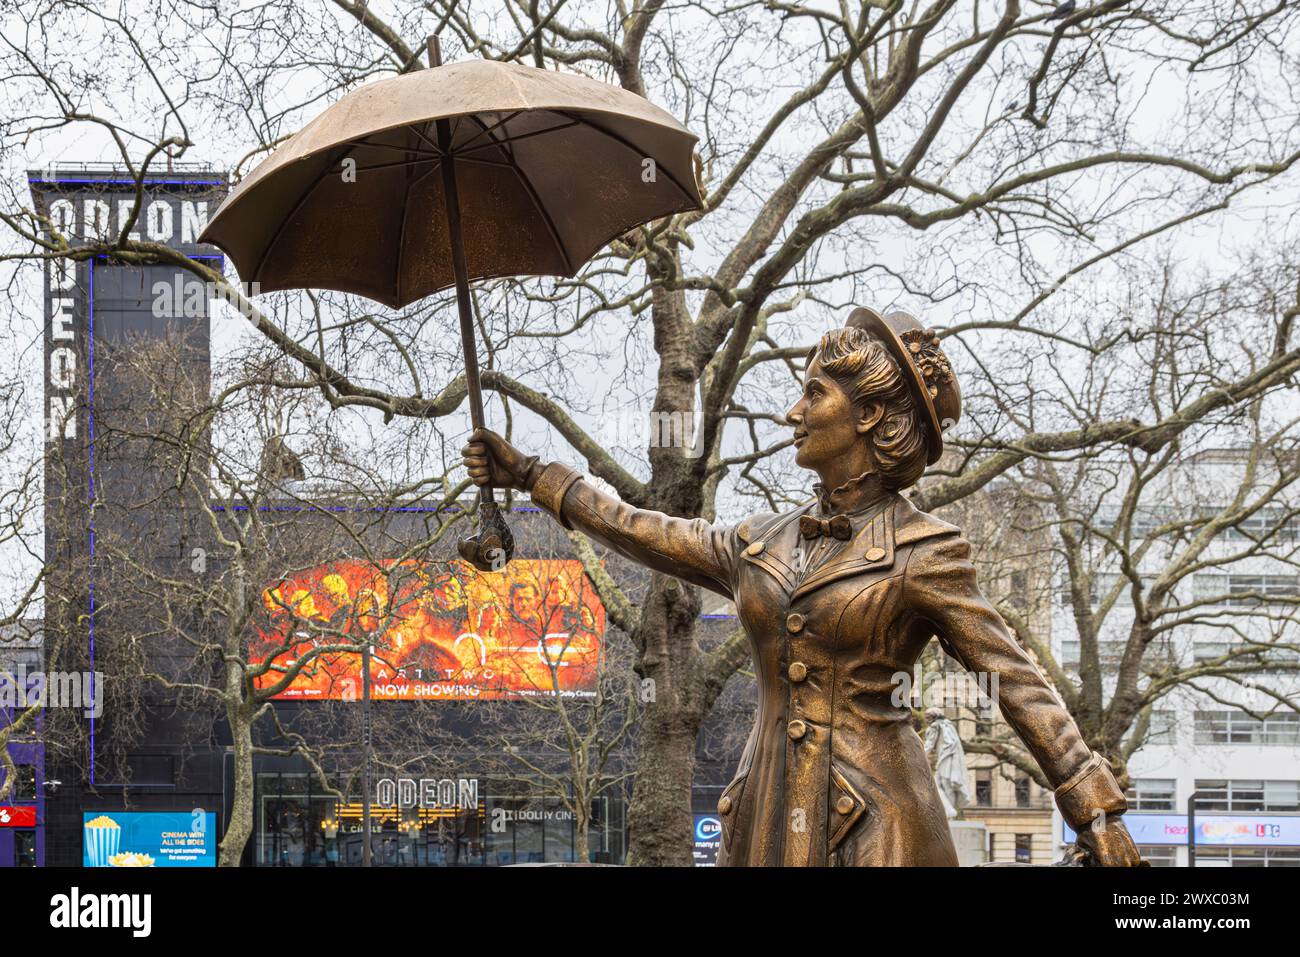 Statua in bronzo di Mary Poppins a Scenes in the Square, Leicester Square. Sede di cinema di rilievo nazionale e di numerose anteprime cinematografiche. Foto Stock